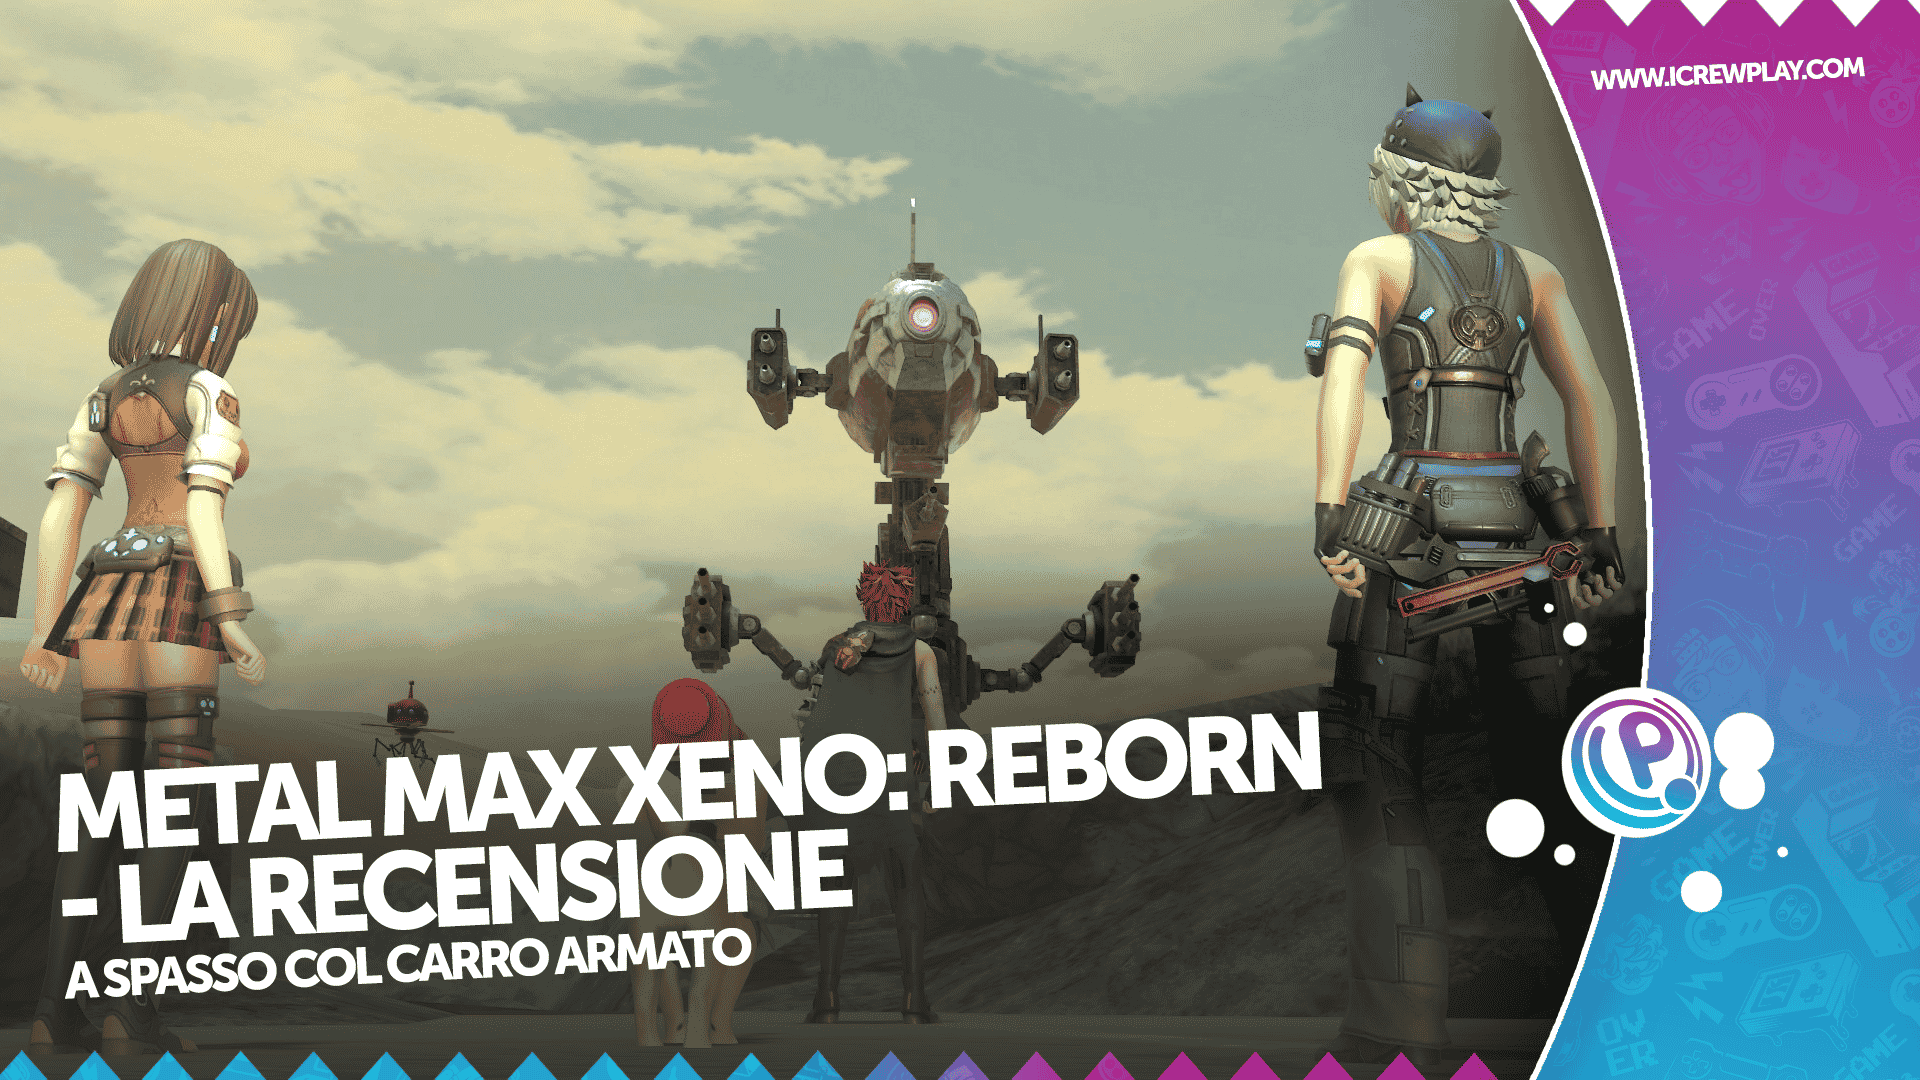 Metal Max Xeno Reborn - la recensione per Nintendo Switch 4